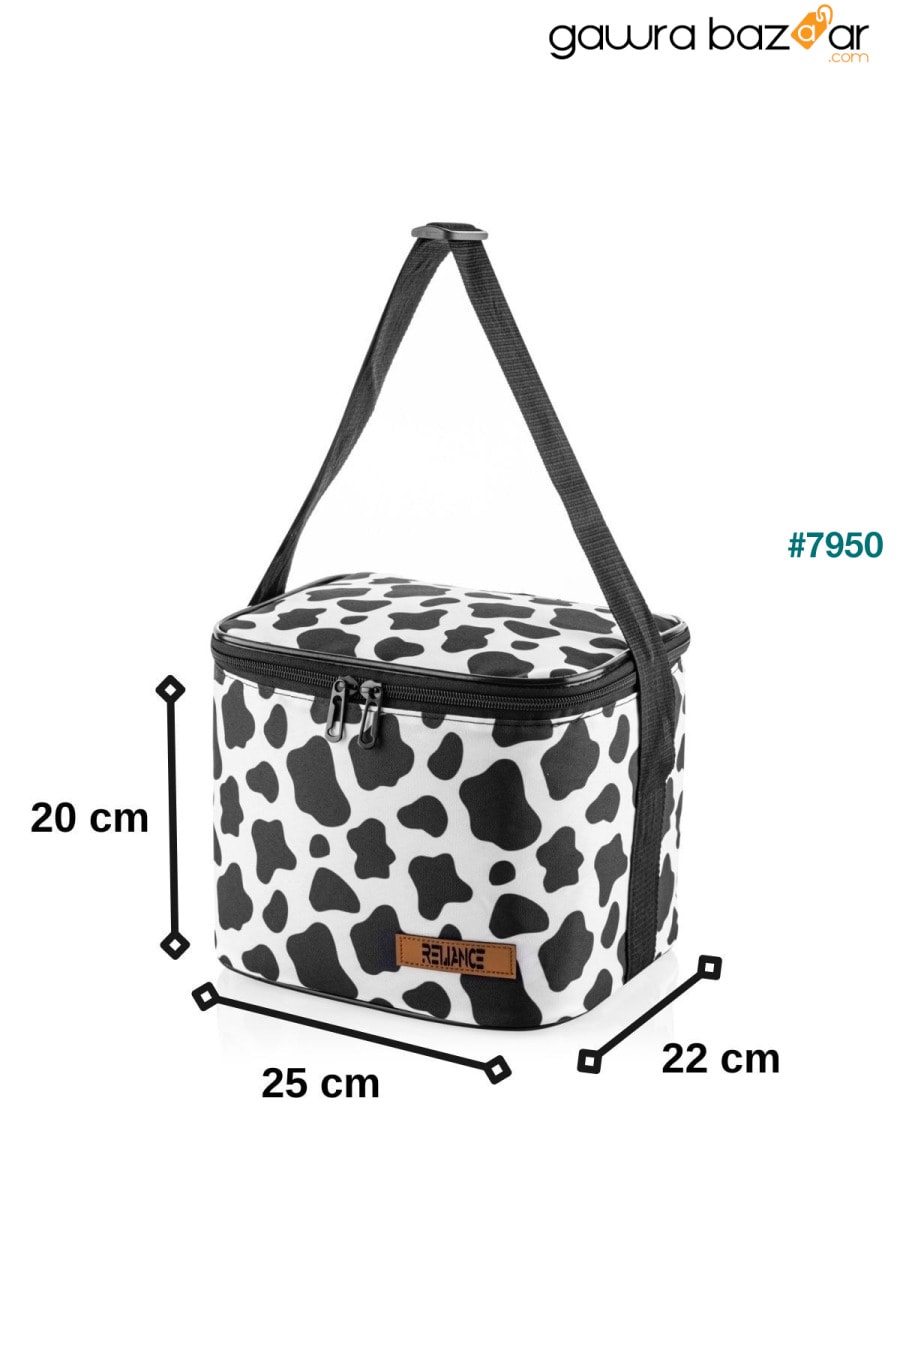 حقيبة نزهة مبردة للتغذية الحرارية سعة 10 لترات - قطعتان من بطاريات الثلج كهدية RELIANCE 3